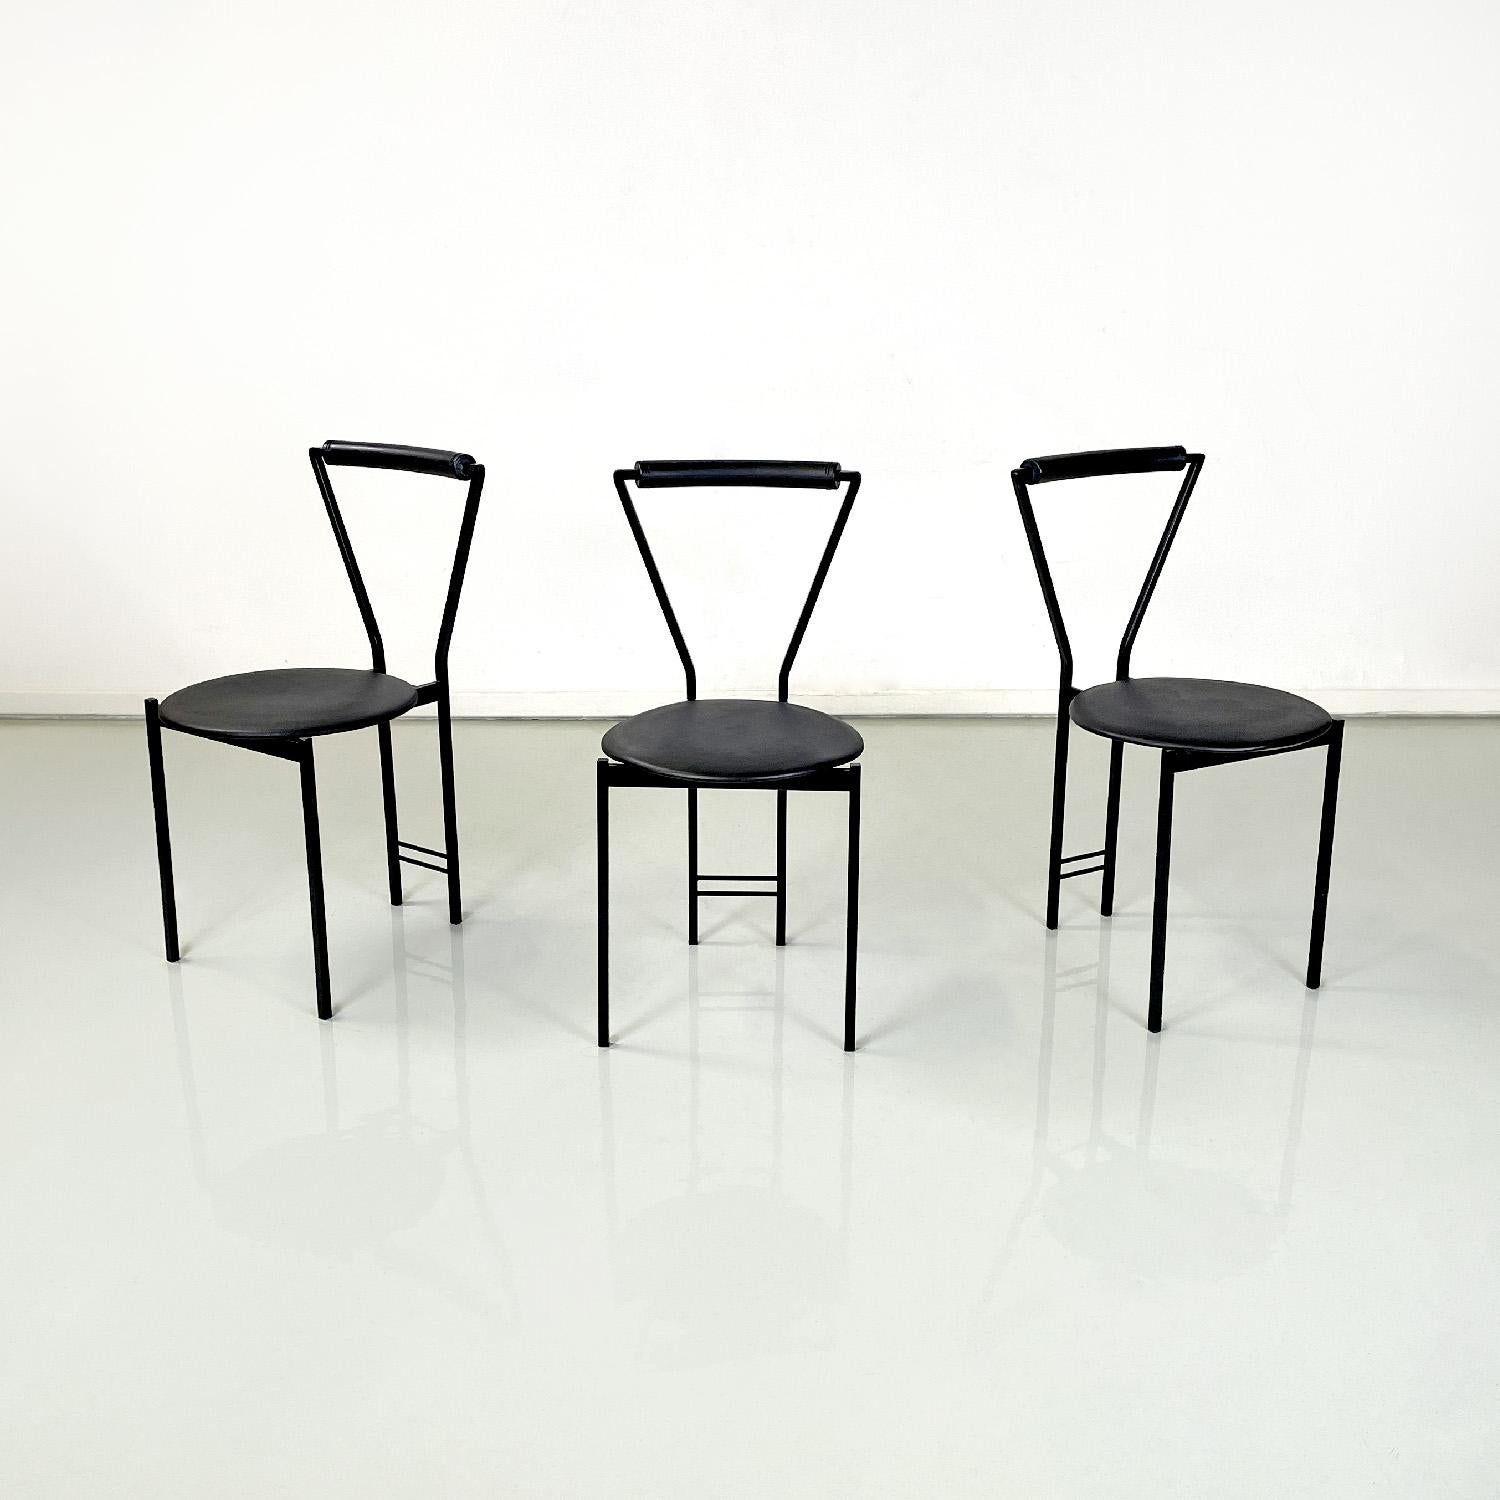 Chaises modernes italiennes en métal noir et caoutchouc, années 1980
Jeu de trois chaises avec assise ronde en caoutchouc noir. Le dossier est composé d'une structure métallique peinte en noir, de section carrée et de forme triangulaire, enveloppée